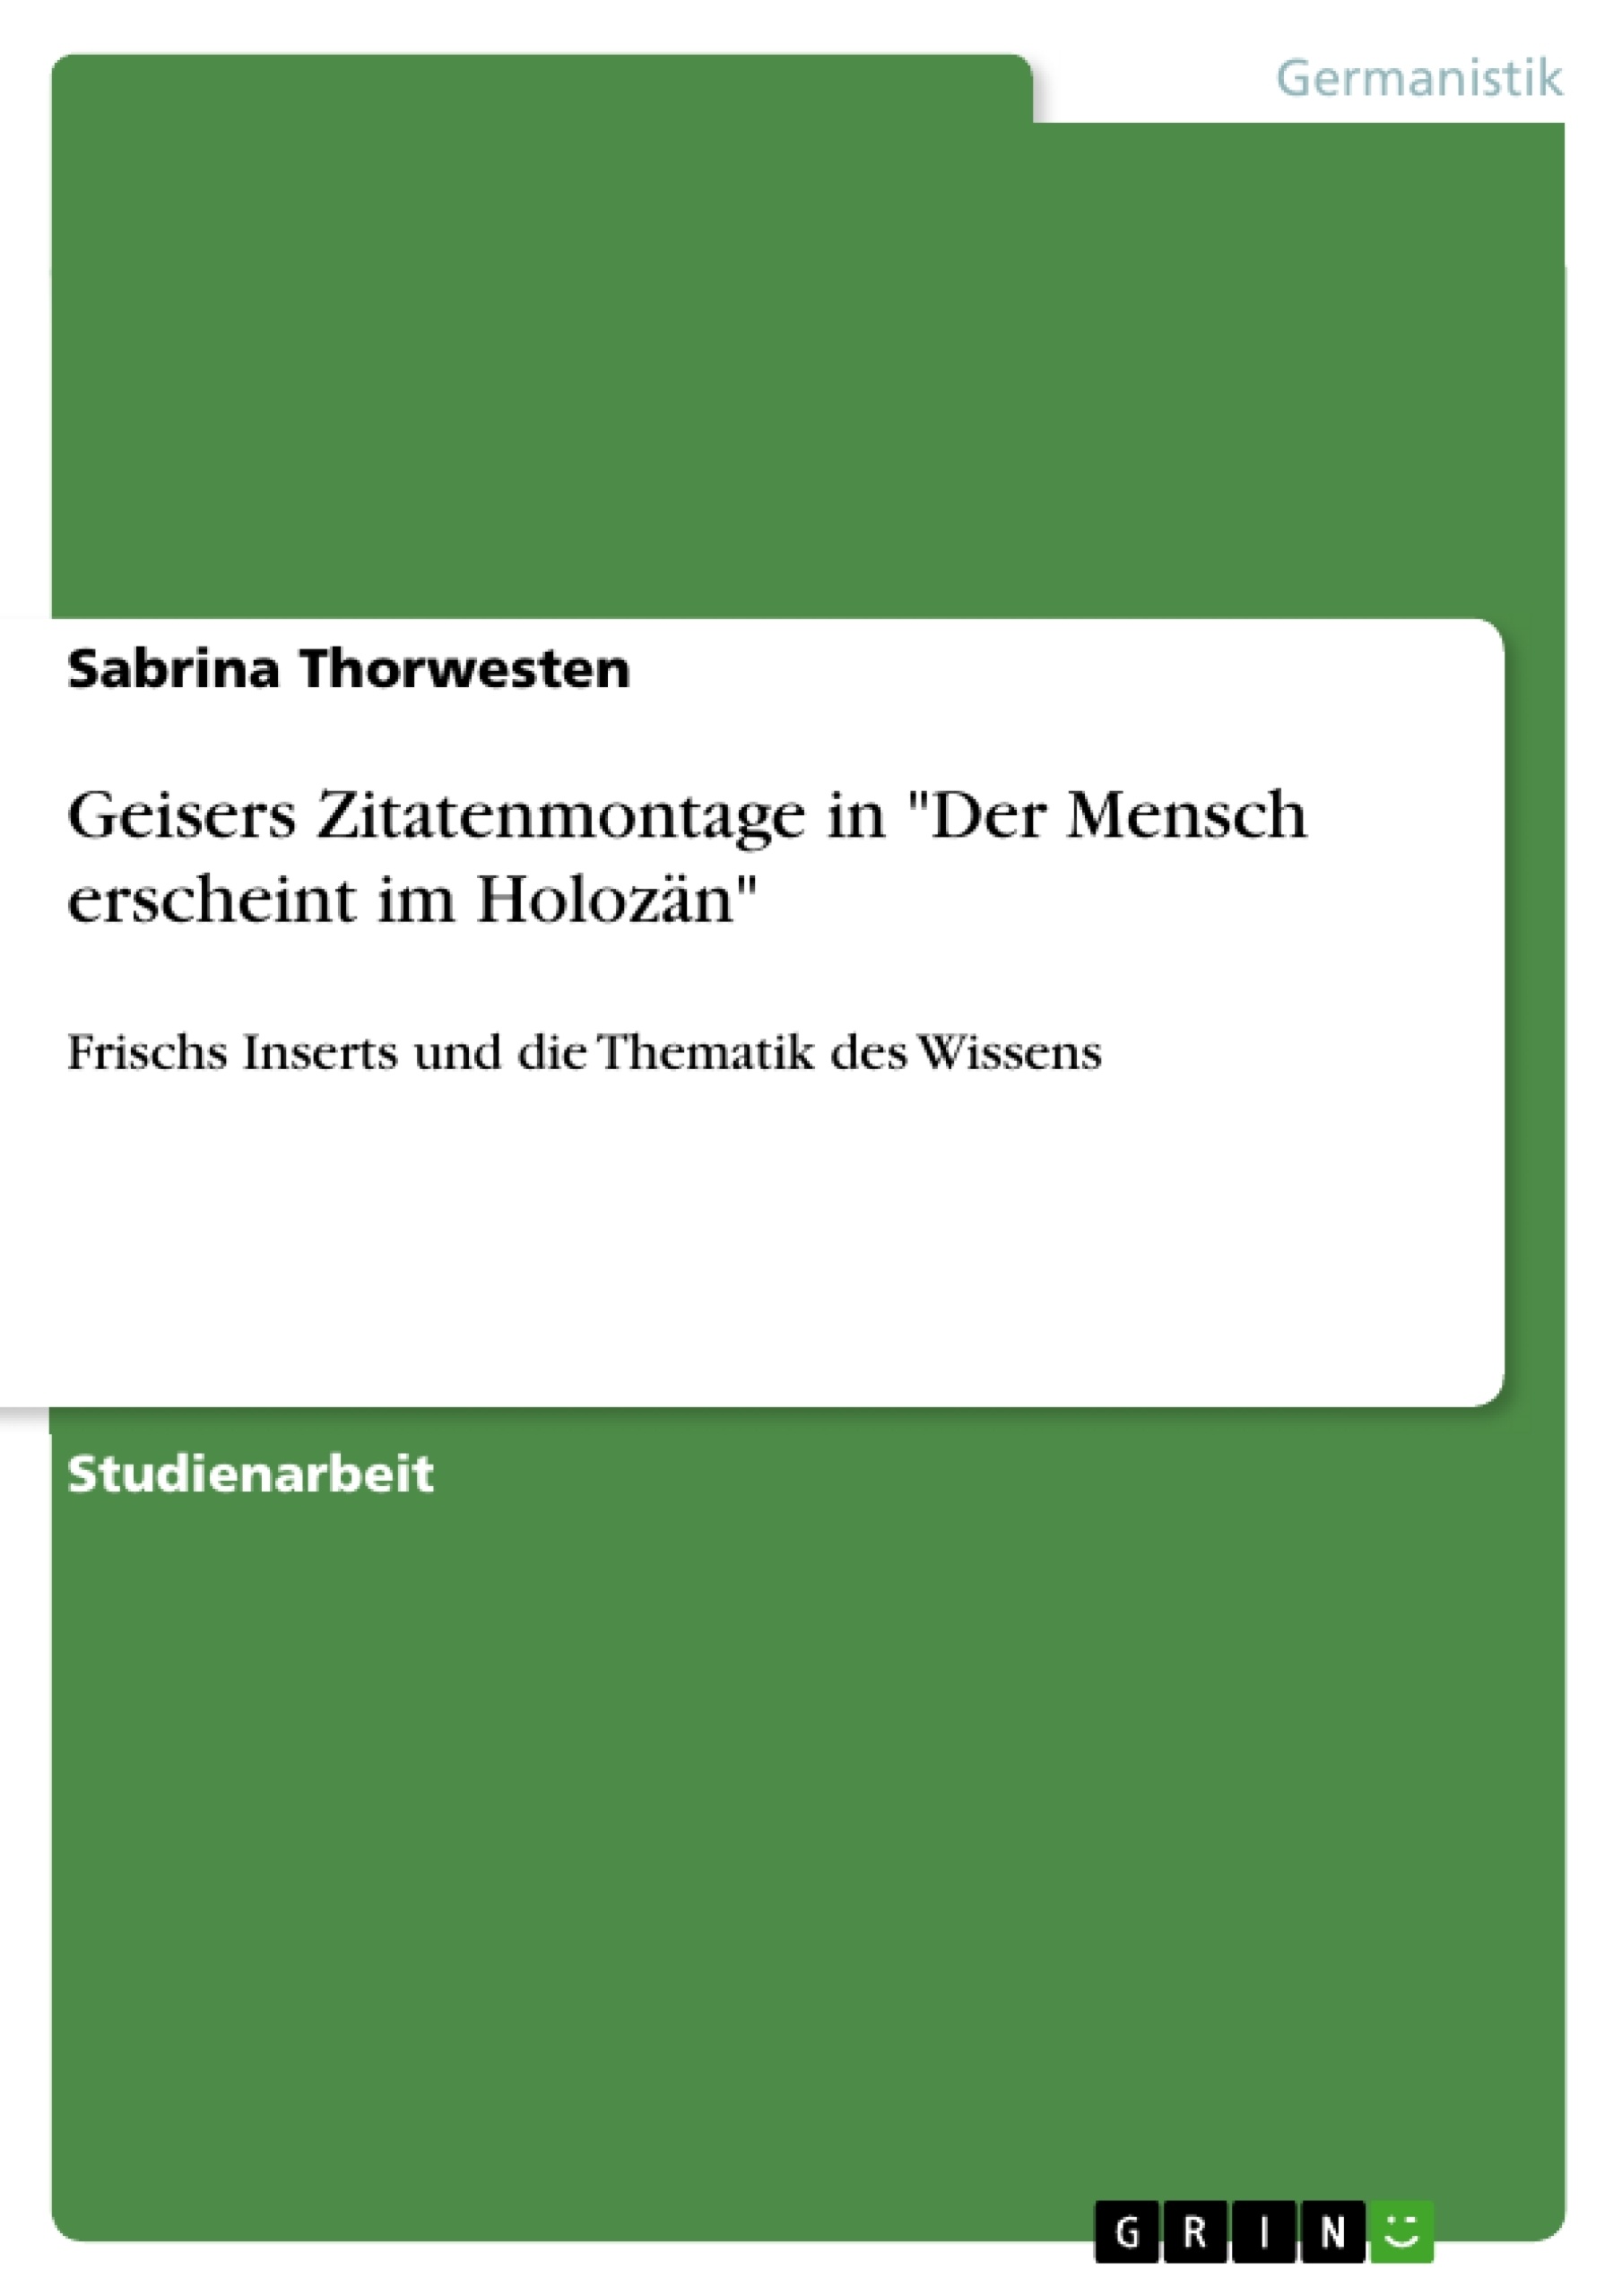 Title: Geisers Zitatenmontage in "Der Mensch erscheint im Holozän"